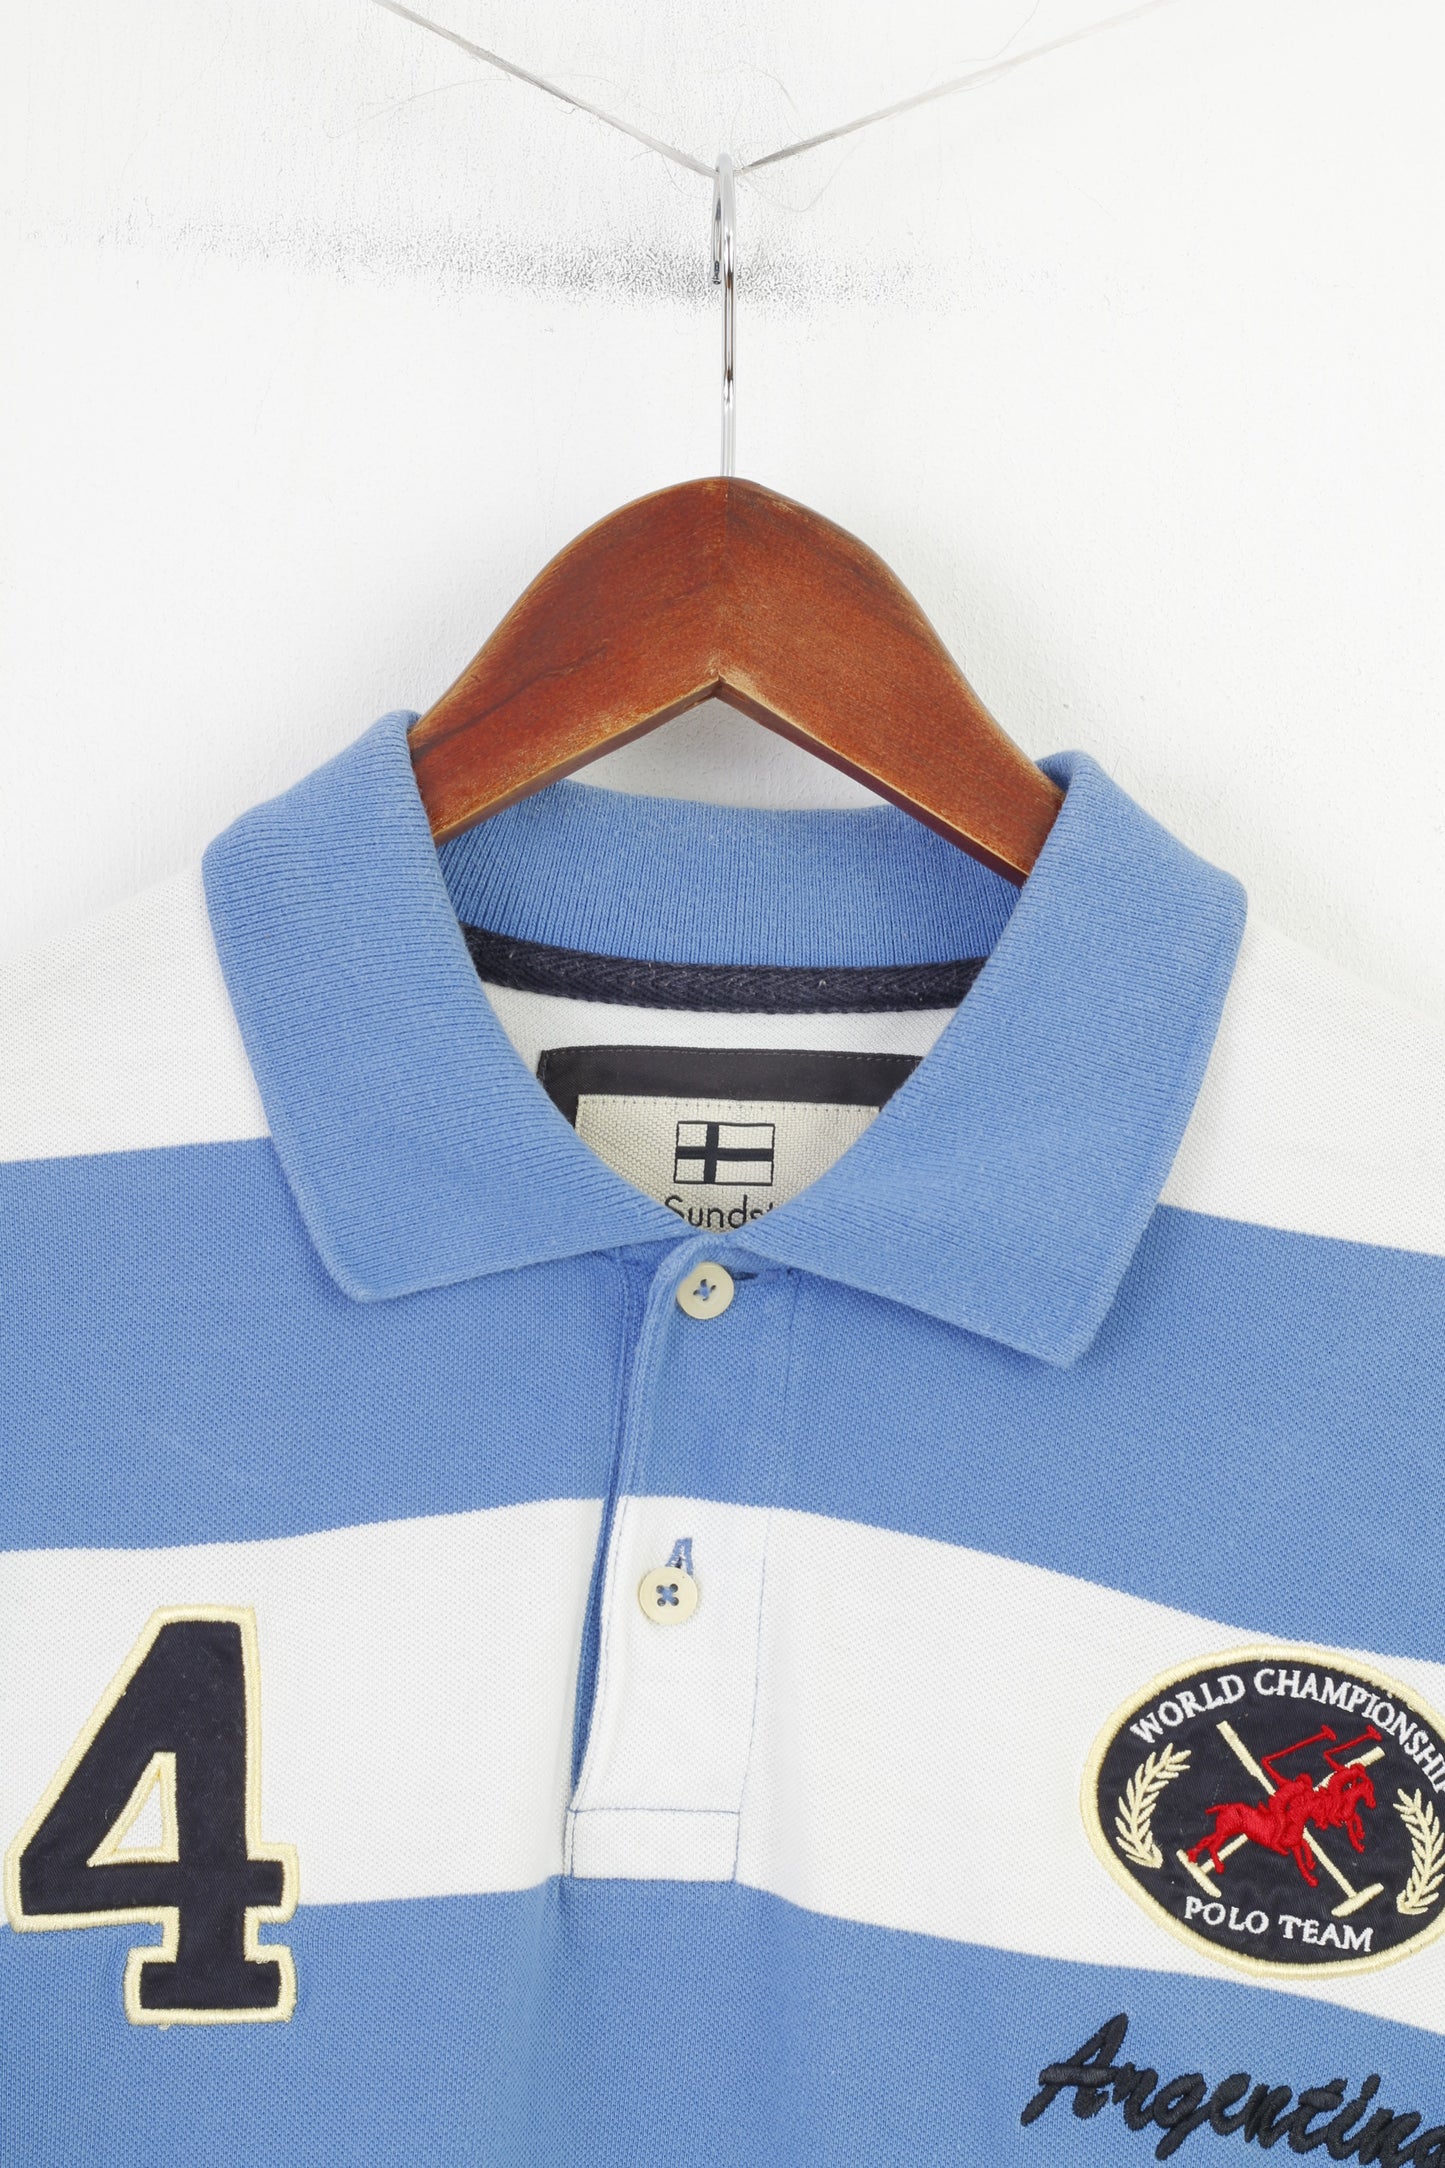 Nils Sundström Men L Polo Shirt Striped Blue White Cotton Argentina Polo Team Vintage Top